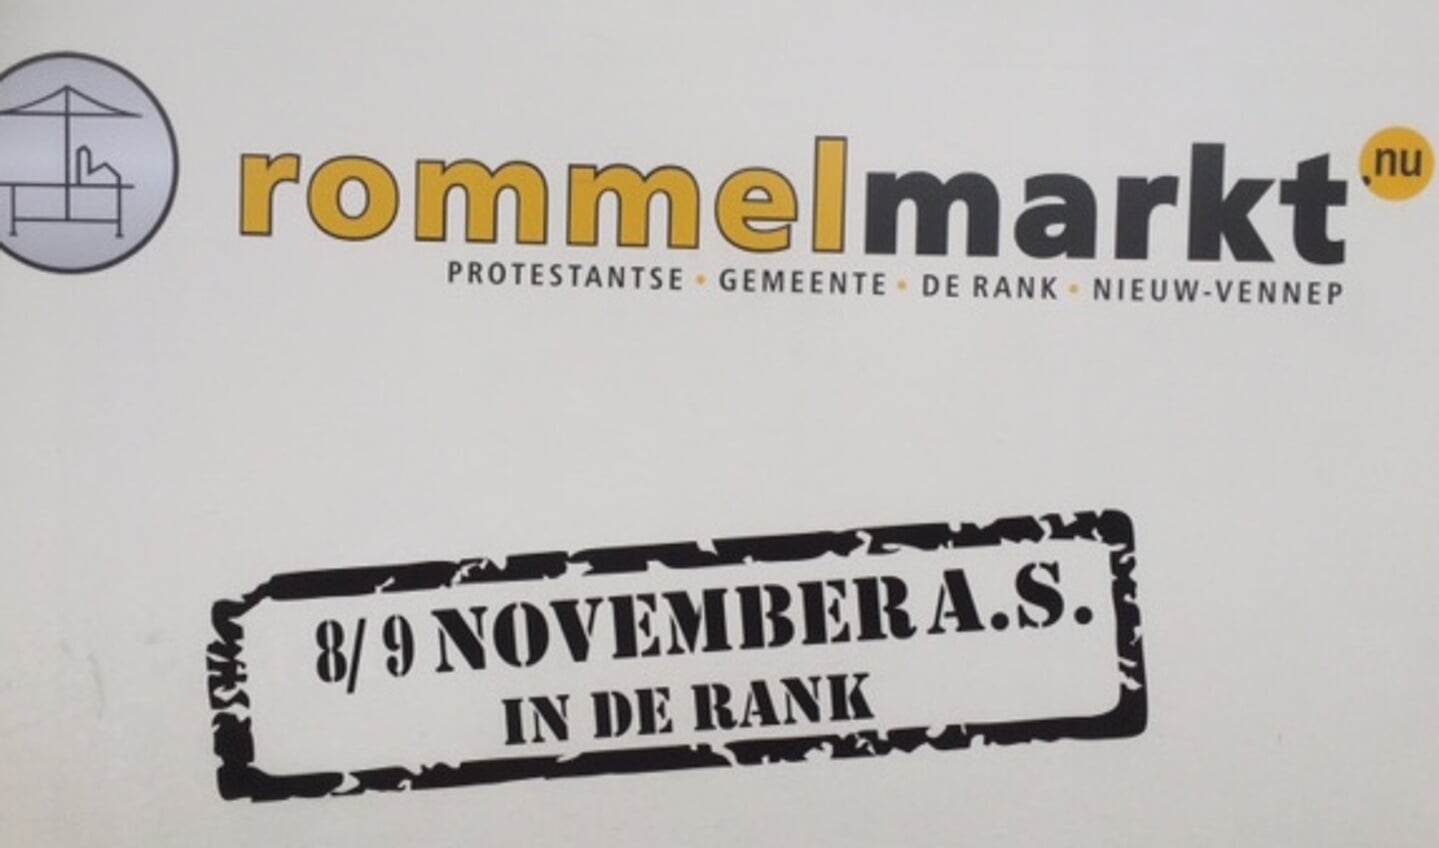 Rommelmarkt in De Rank. 